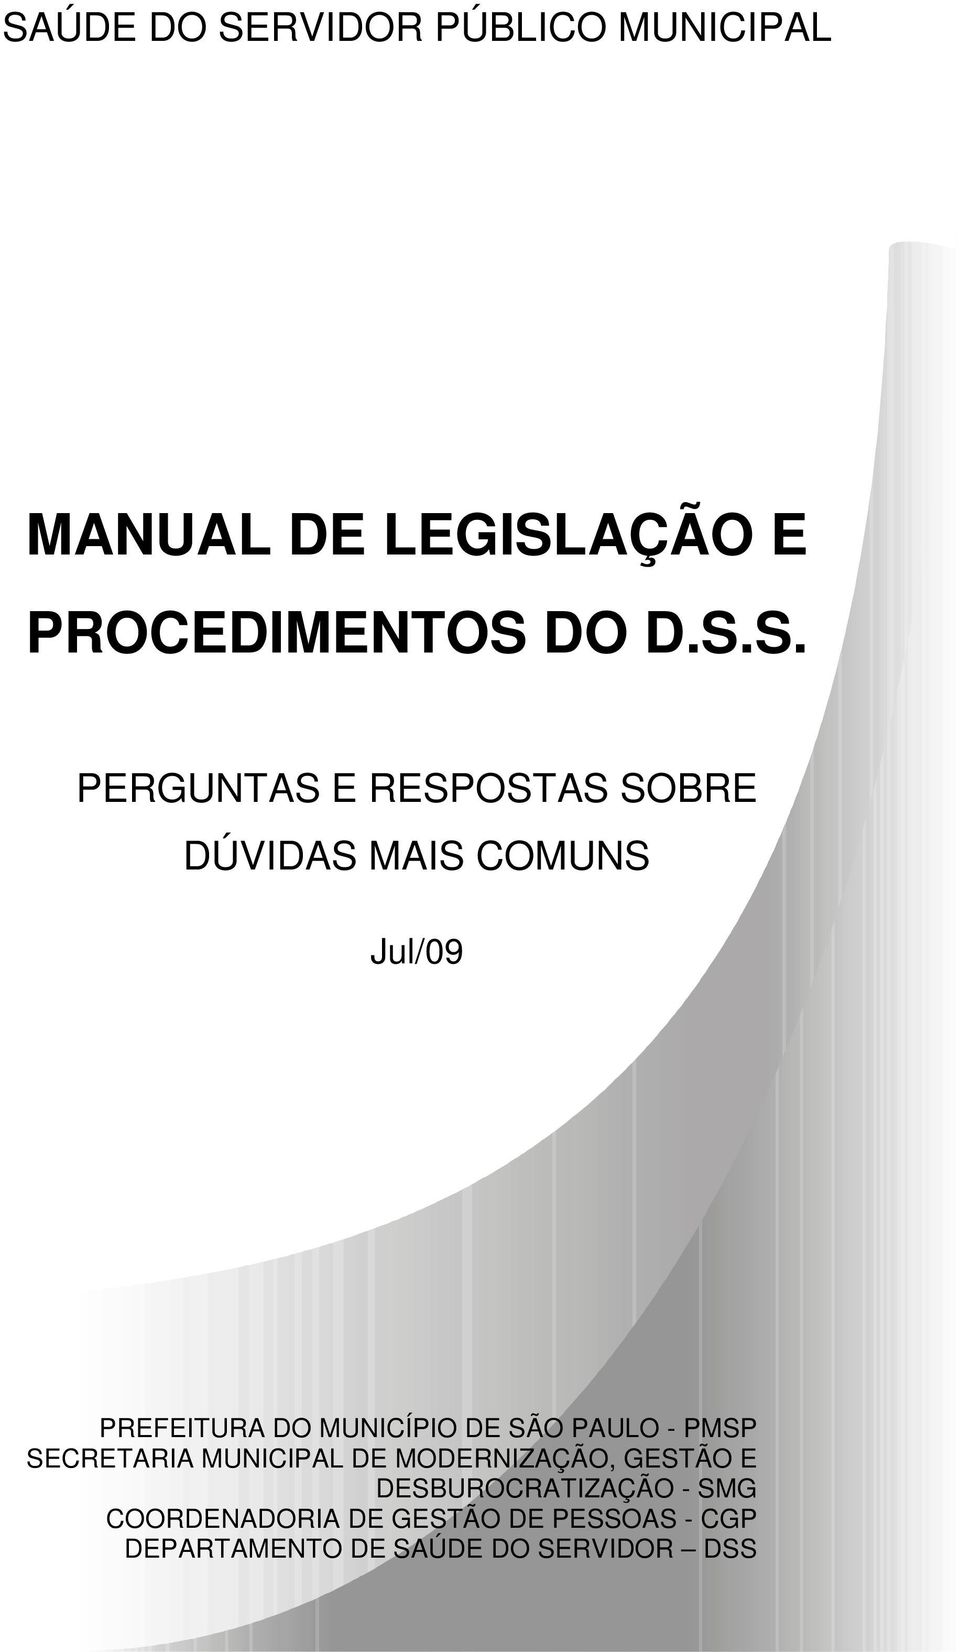 SÃO PAULO - PMSP SECRETARIA MUNICIPAL DE MODERNIZAÇÃO, GESTÃO E DESBUROCRATIZAÇÃO